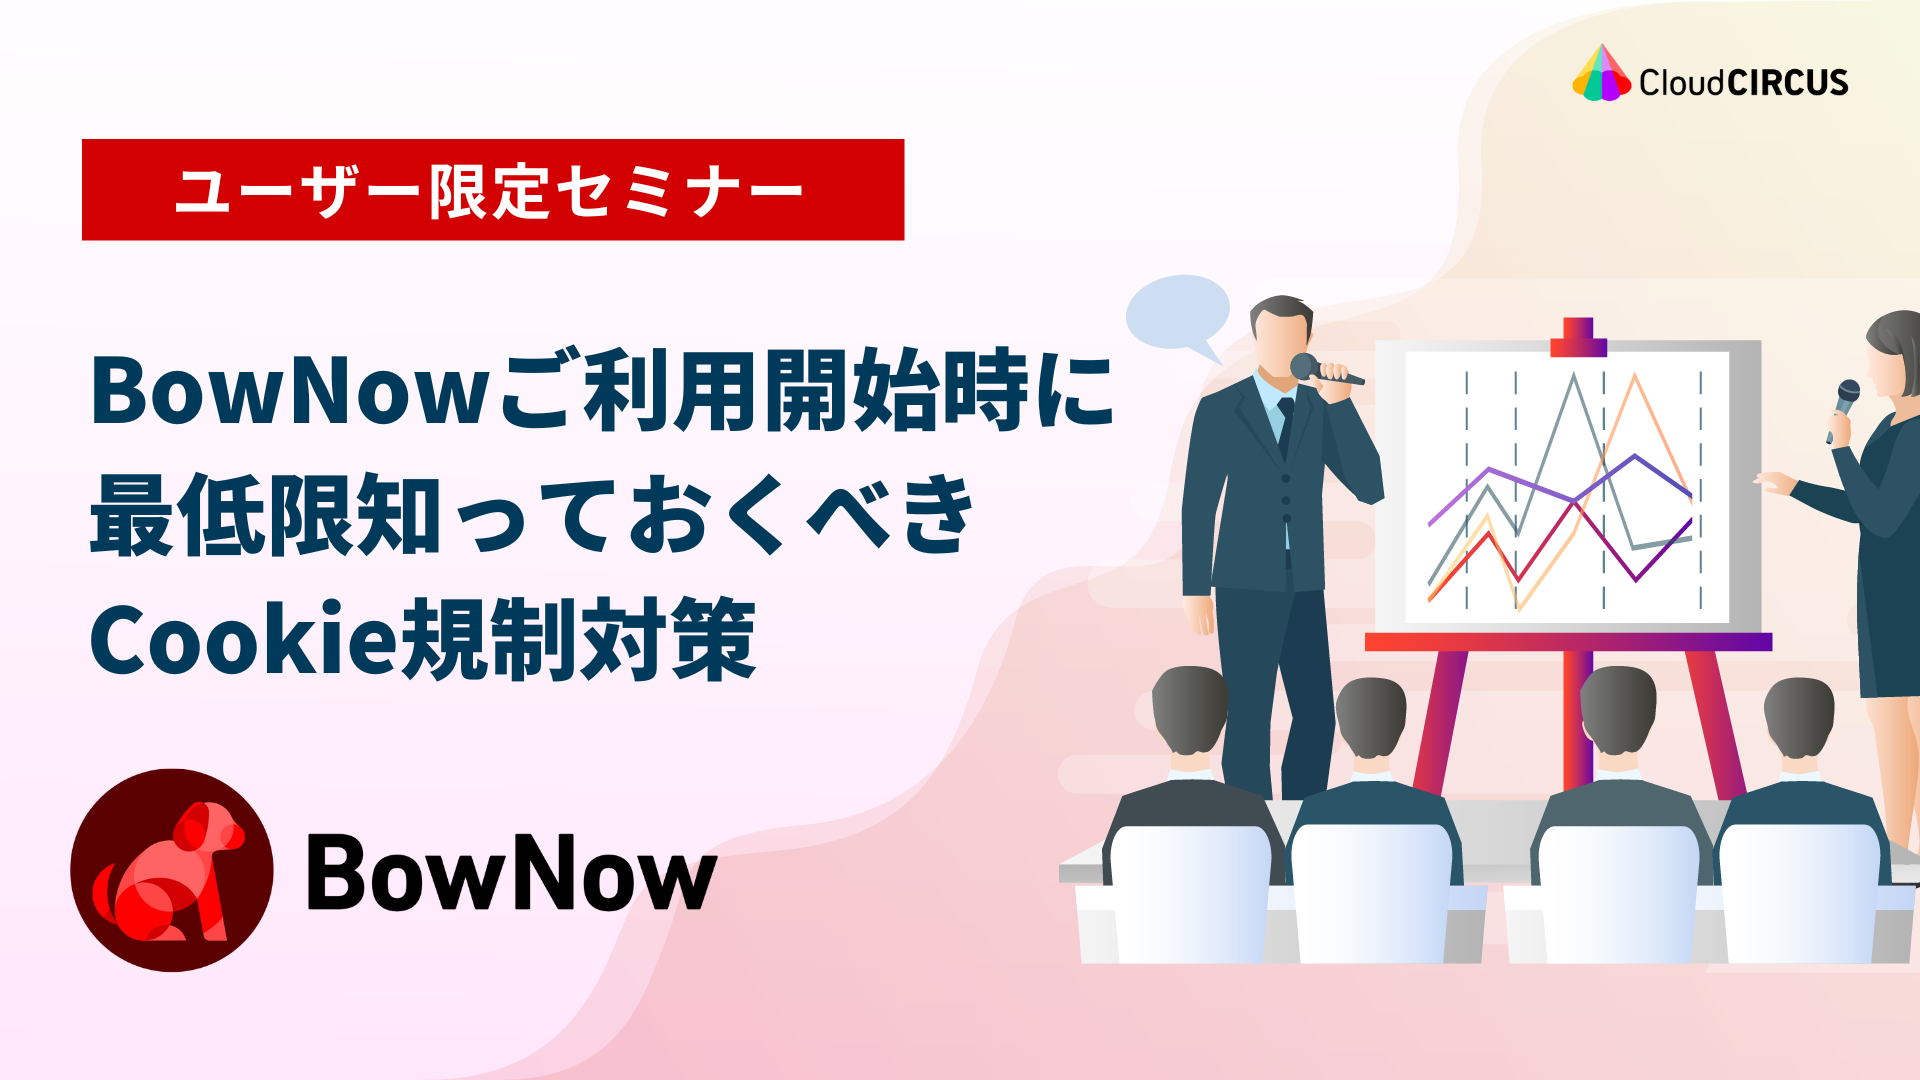 【3月1日(火)】Bownowを最大限生かすためのWEBサイトの考え方・運用方法・集客方法について